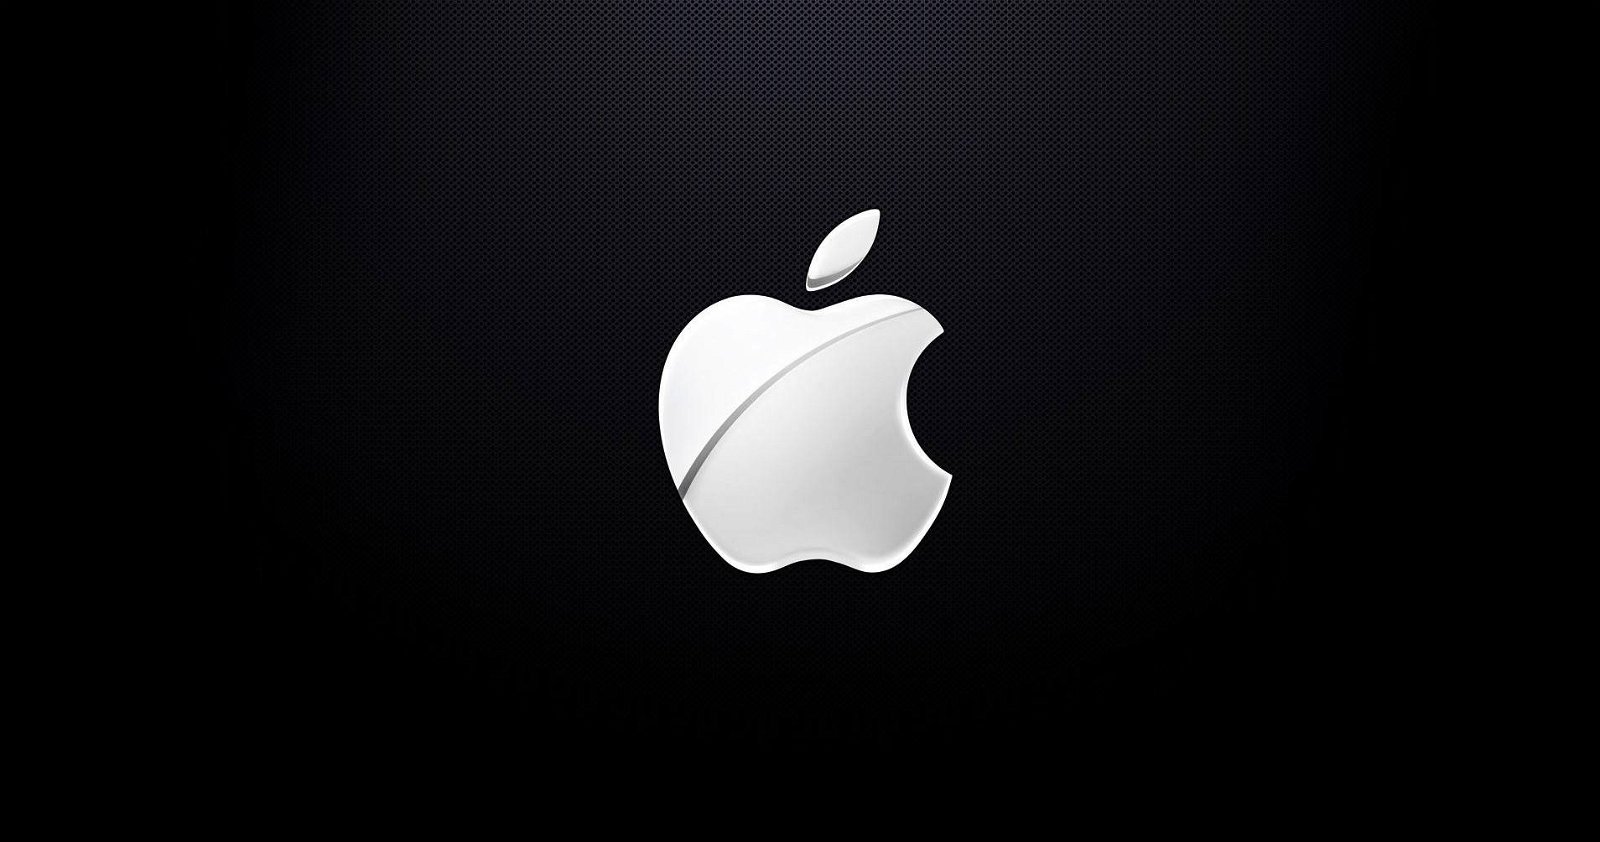 Immagine di Apple, nuovo brevetto per gestire i dispositivi inquadrandoli con l'iPhone